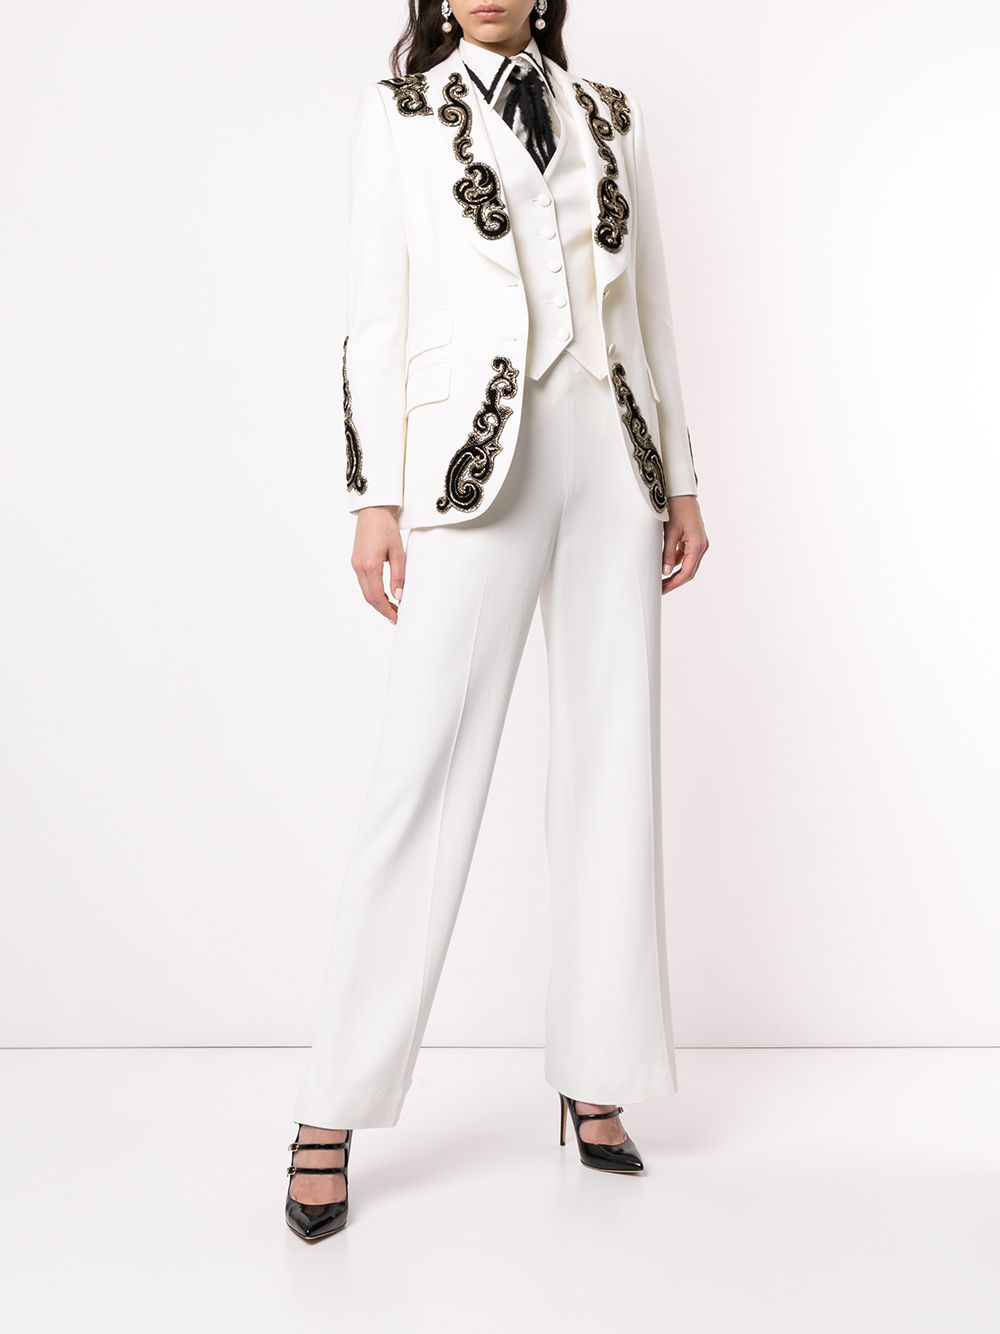 фото Dolce & Gabbana приталенный жилет